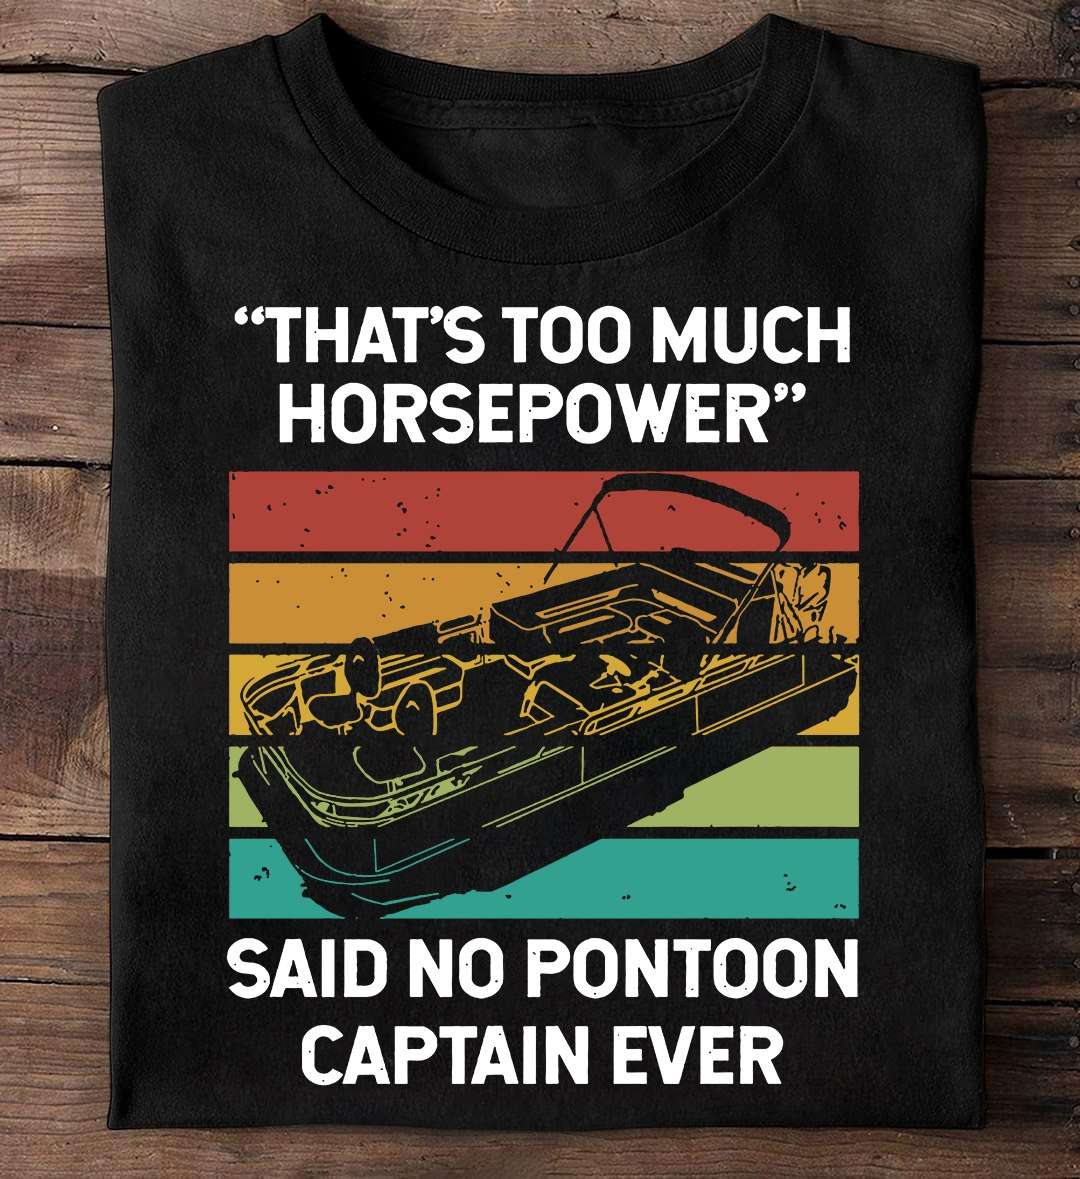 The Pontoon - That's too much horsepower said no pontoon captain ever